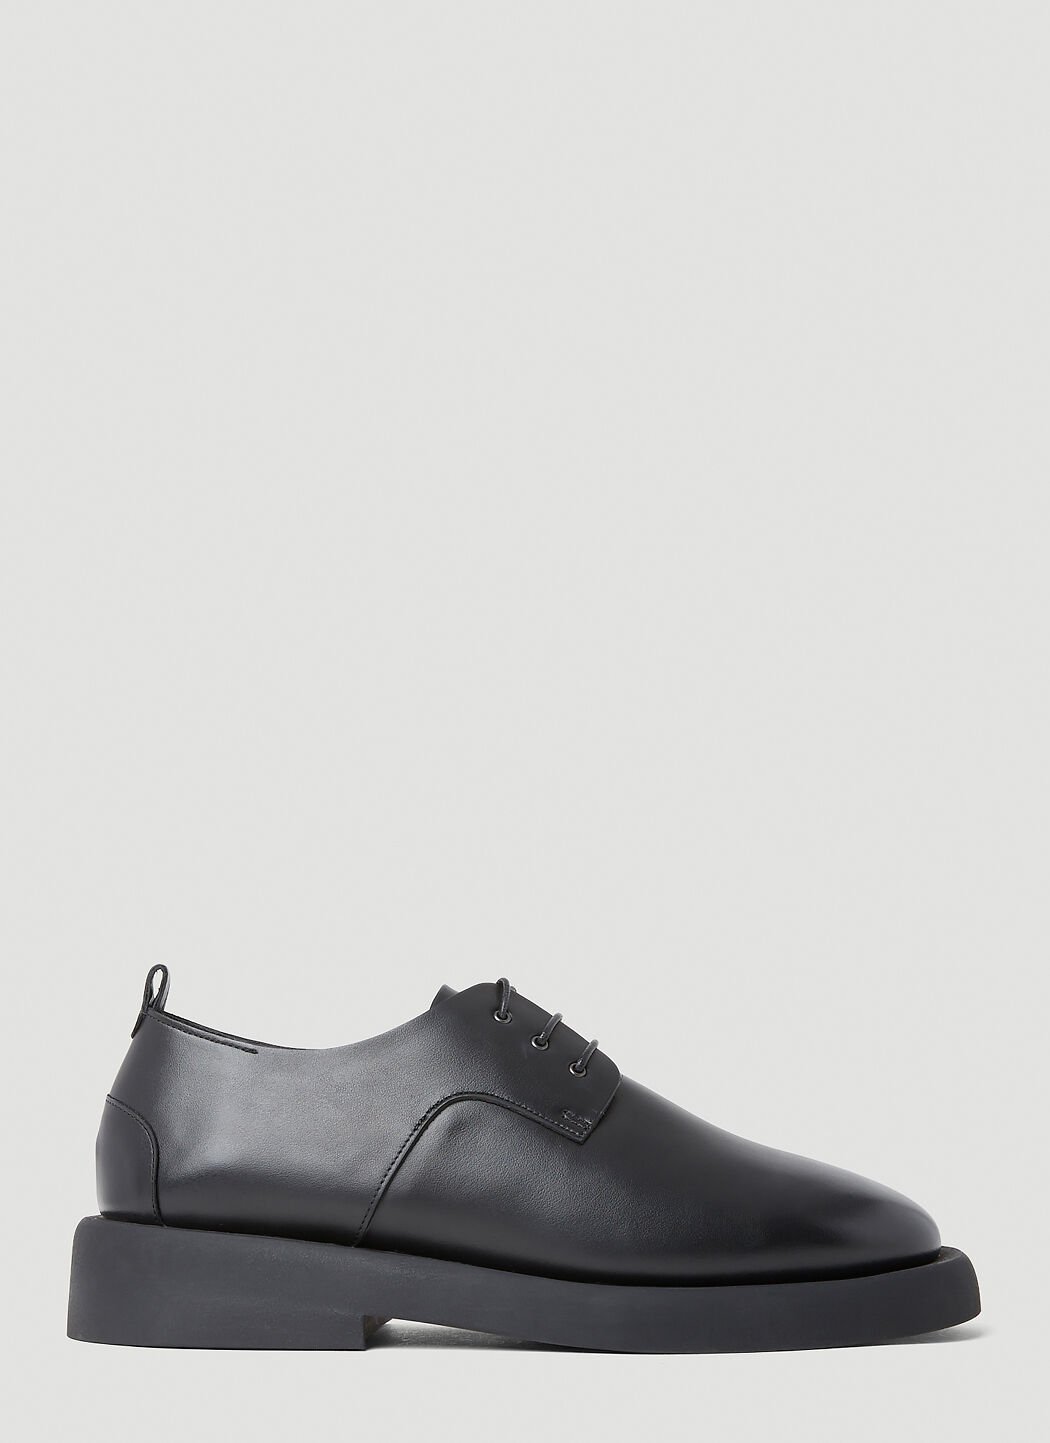 Vivienne Westwood Gommello Derby Shoes Black vvw0255059